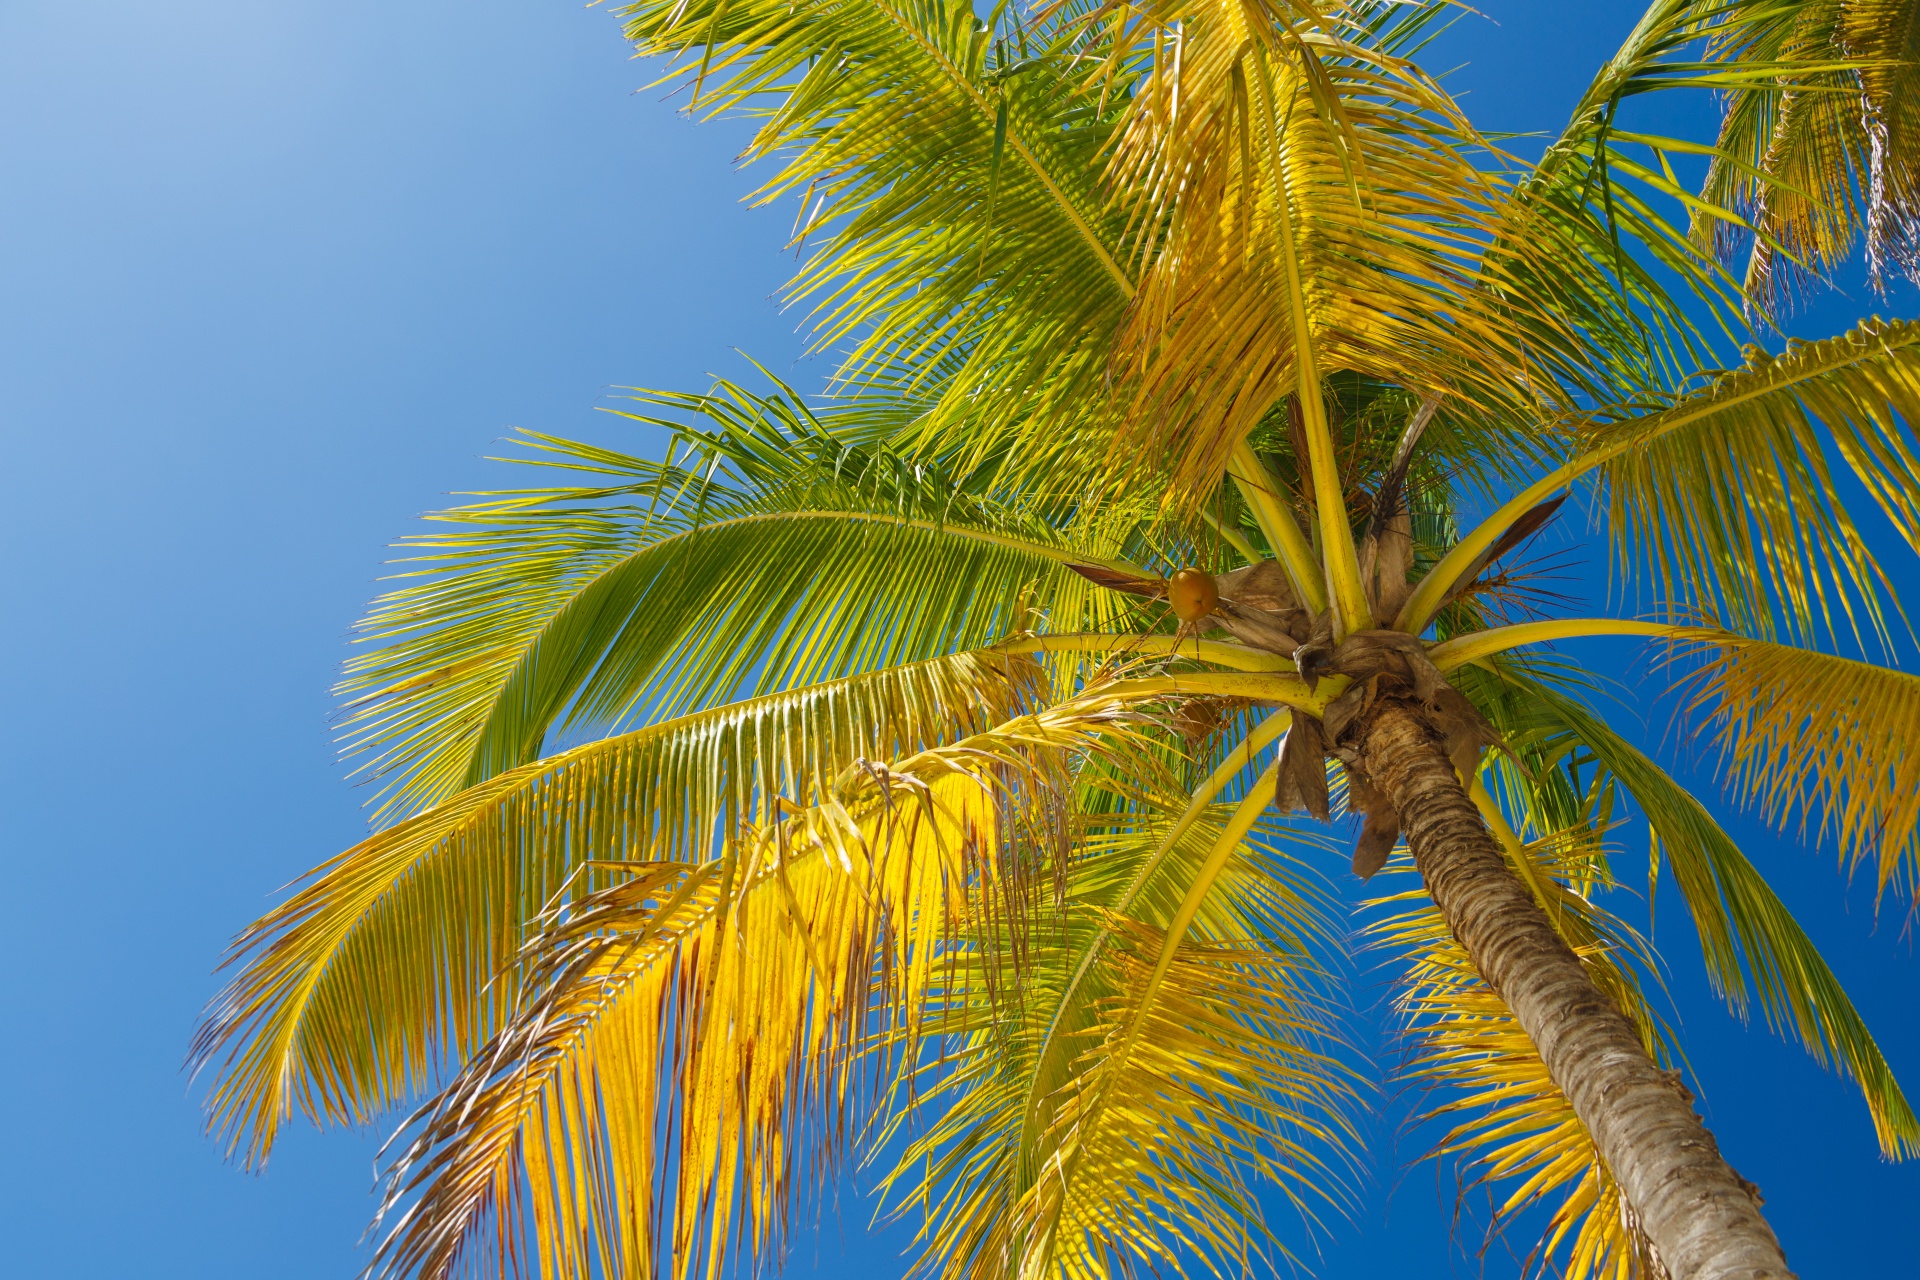 Palm Tree And Blue Sky